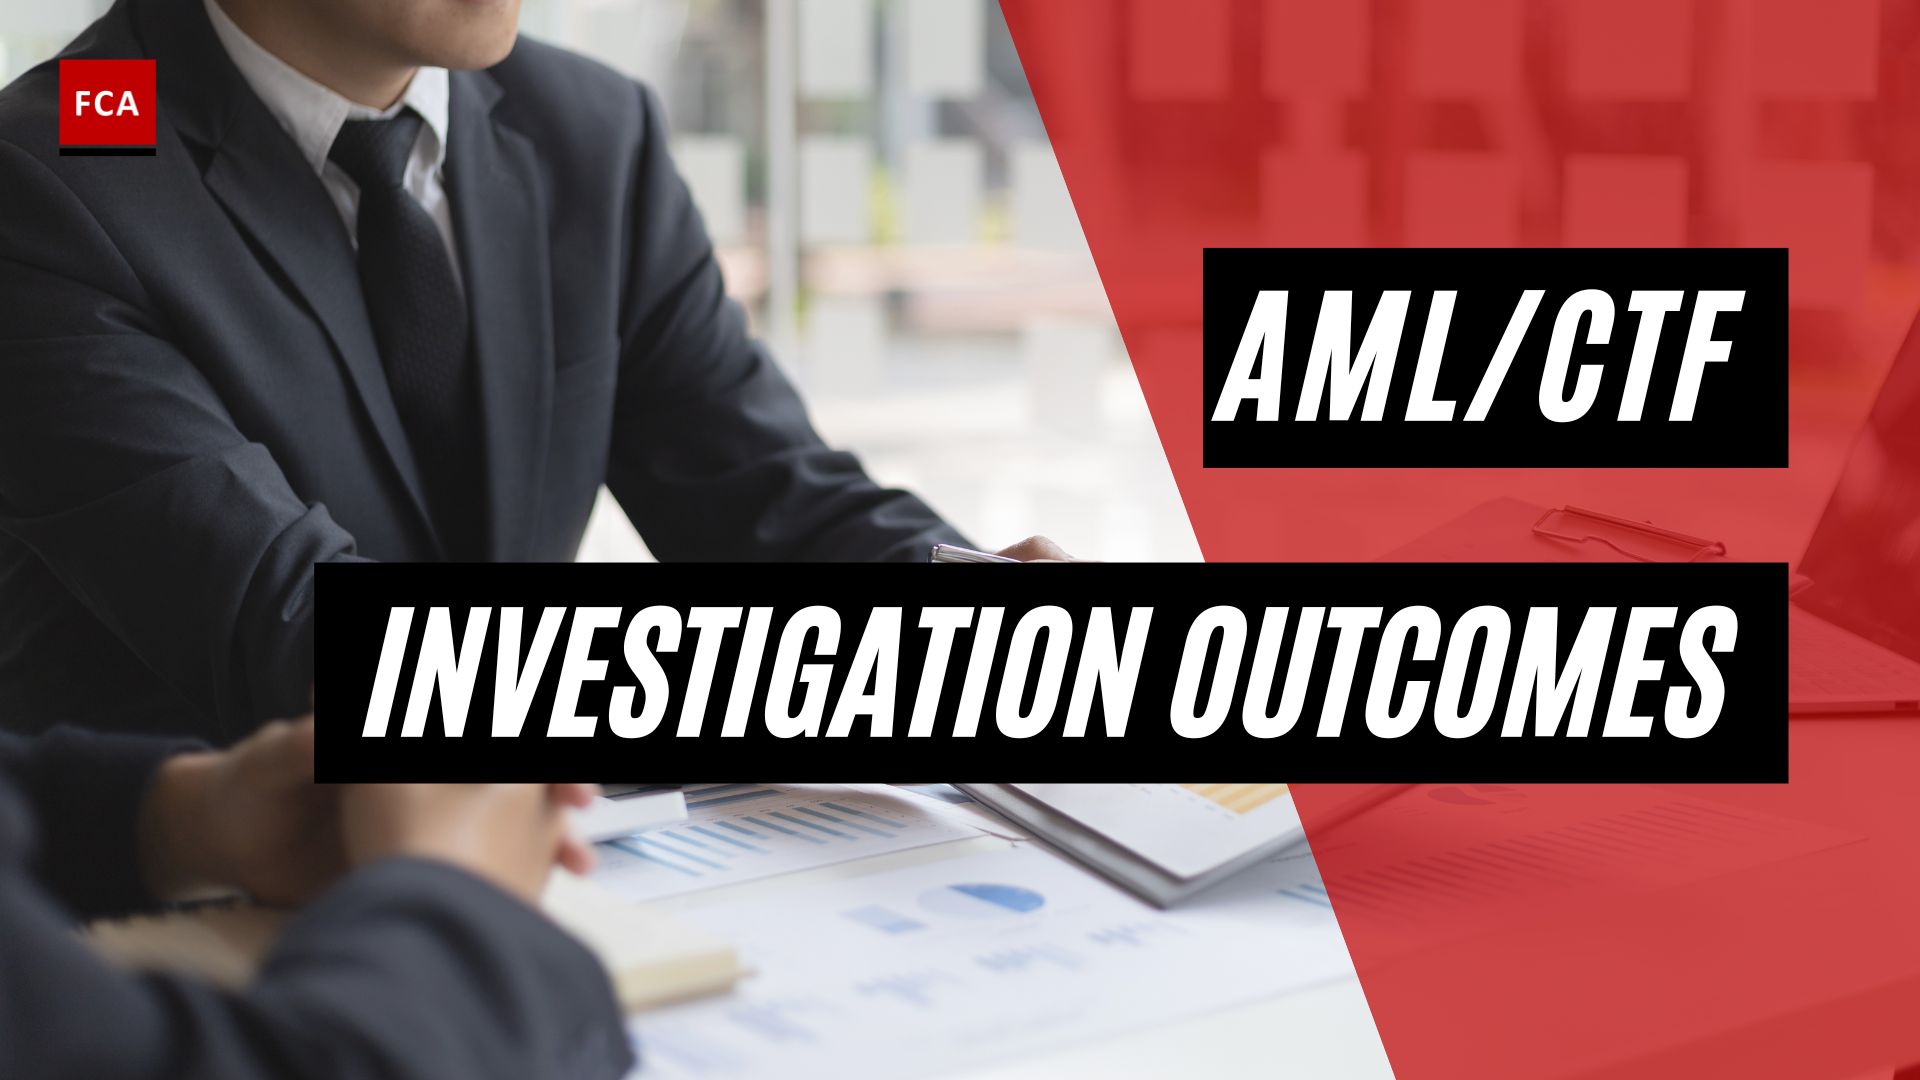 Aml/Ctf Investigation Outcomes